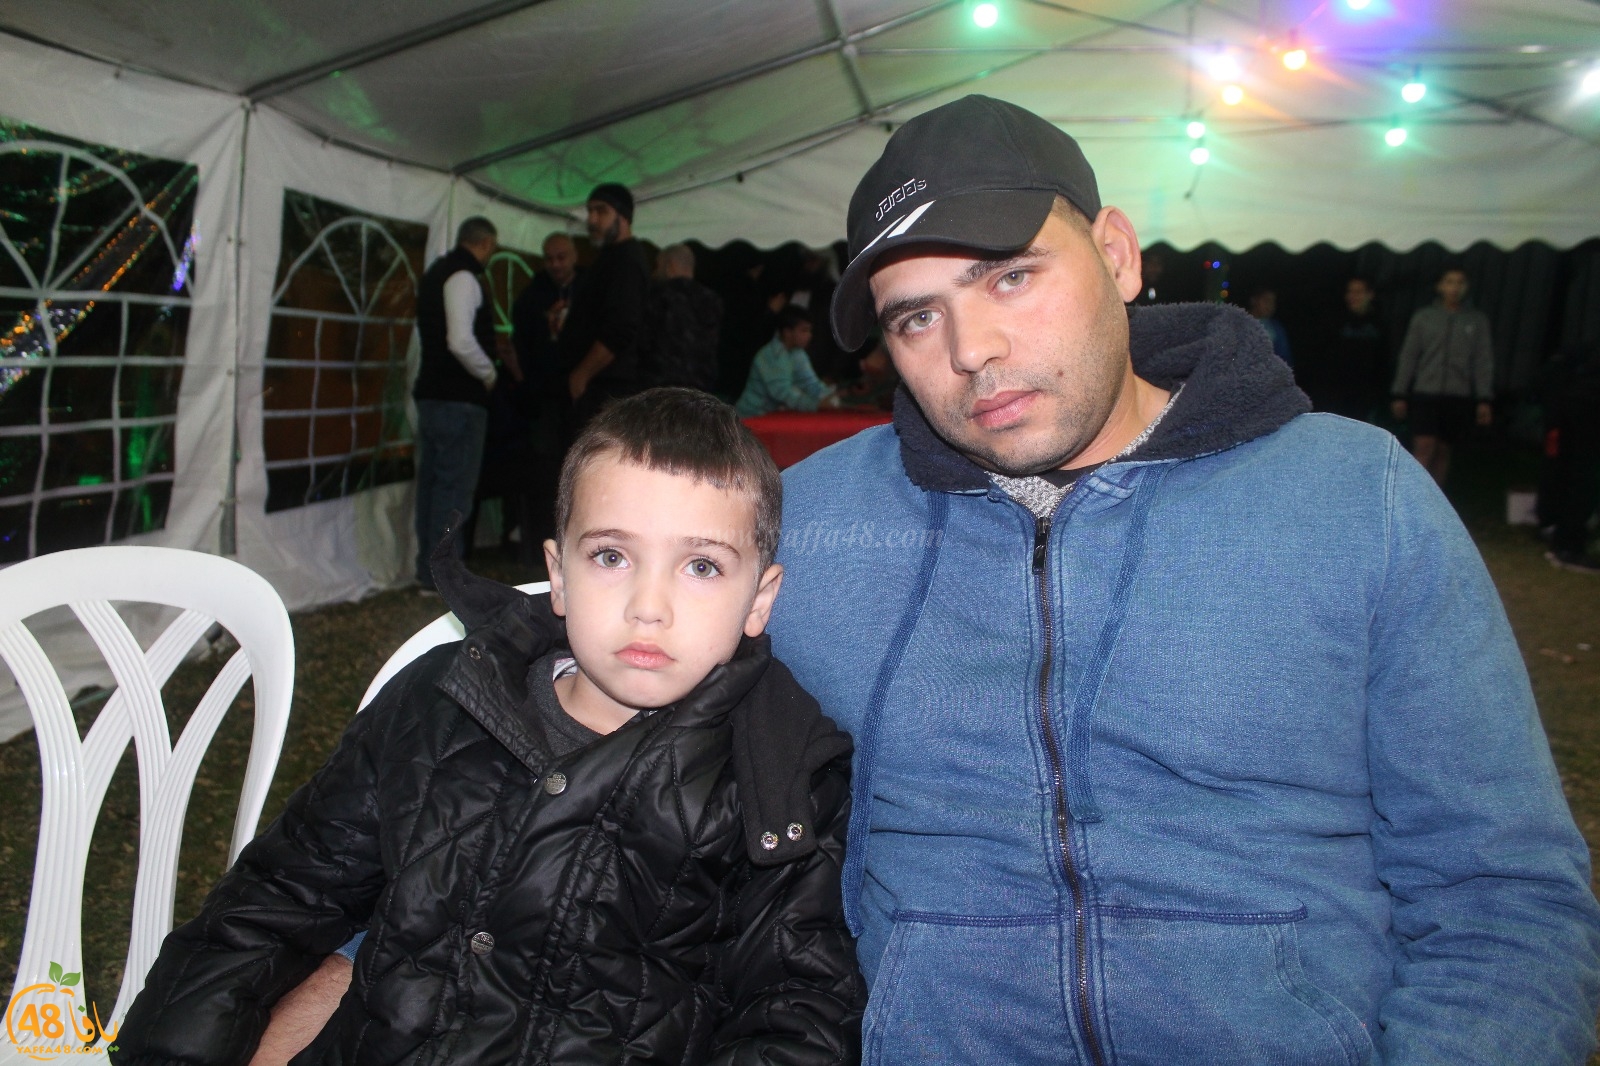  بالصور: خيمة الهدى الدعوية تُنظم أمسية دعوية في ضيافة عائلة دريعي بيافا